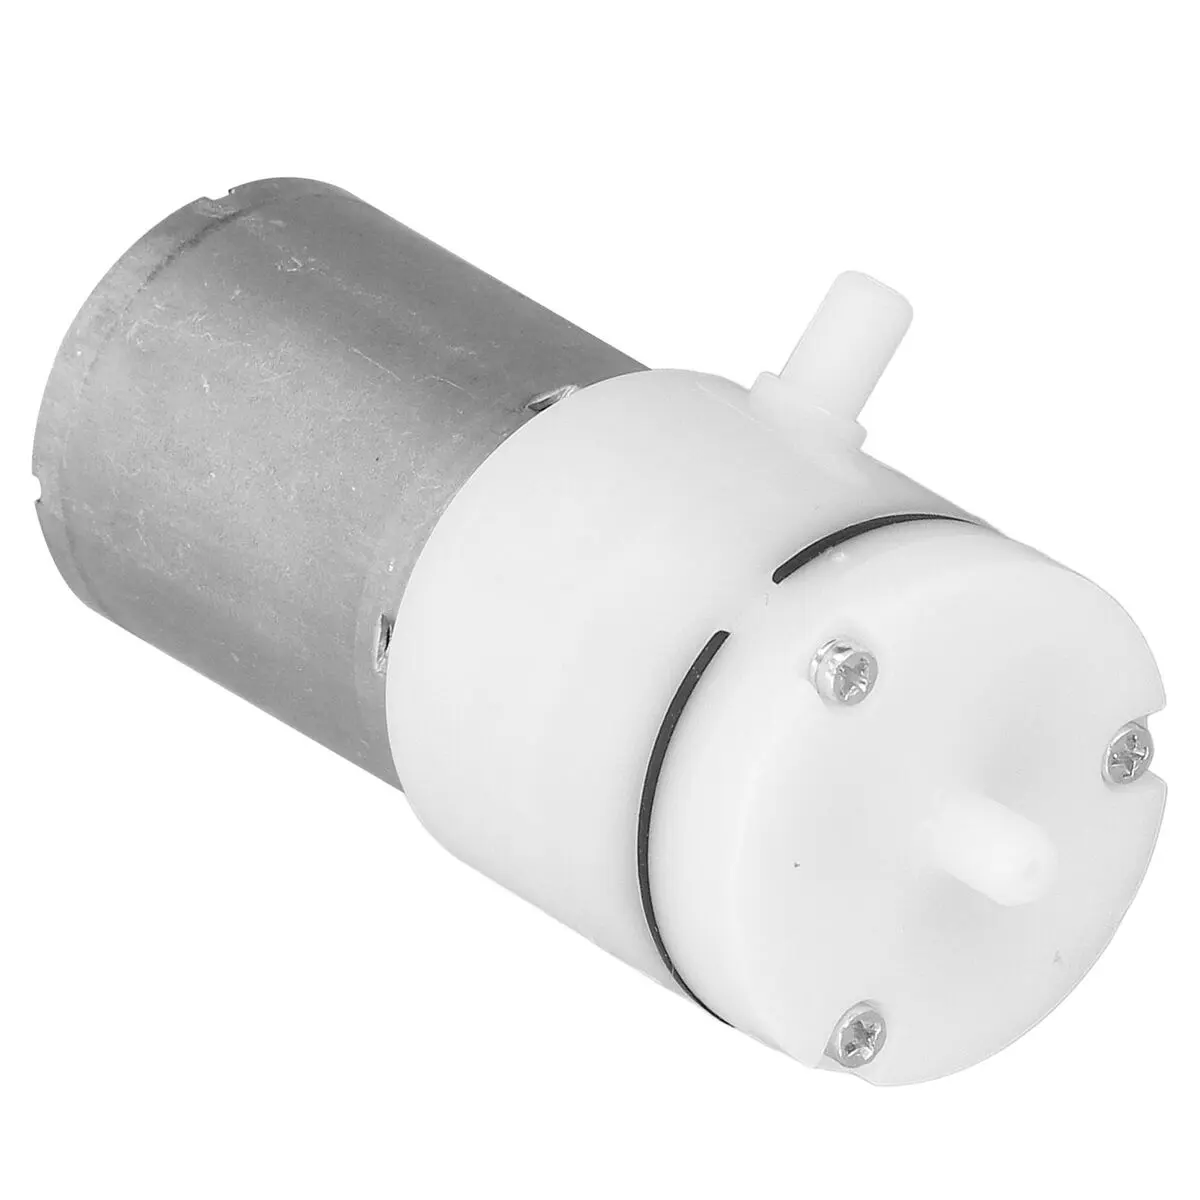 Micro bomba de aire de alta potencia Mini 12V Bomba de vacío Micro bombas de vacío para inducción